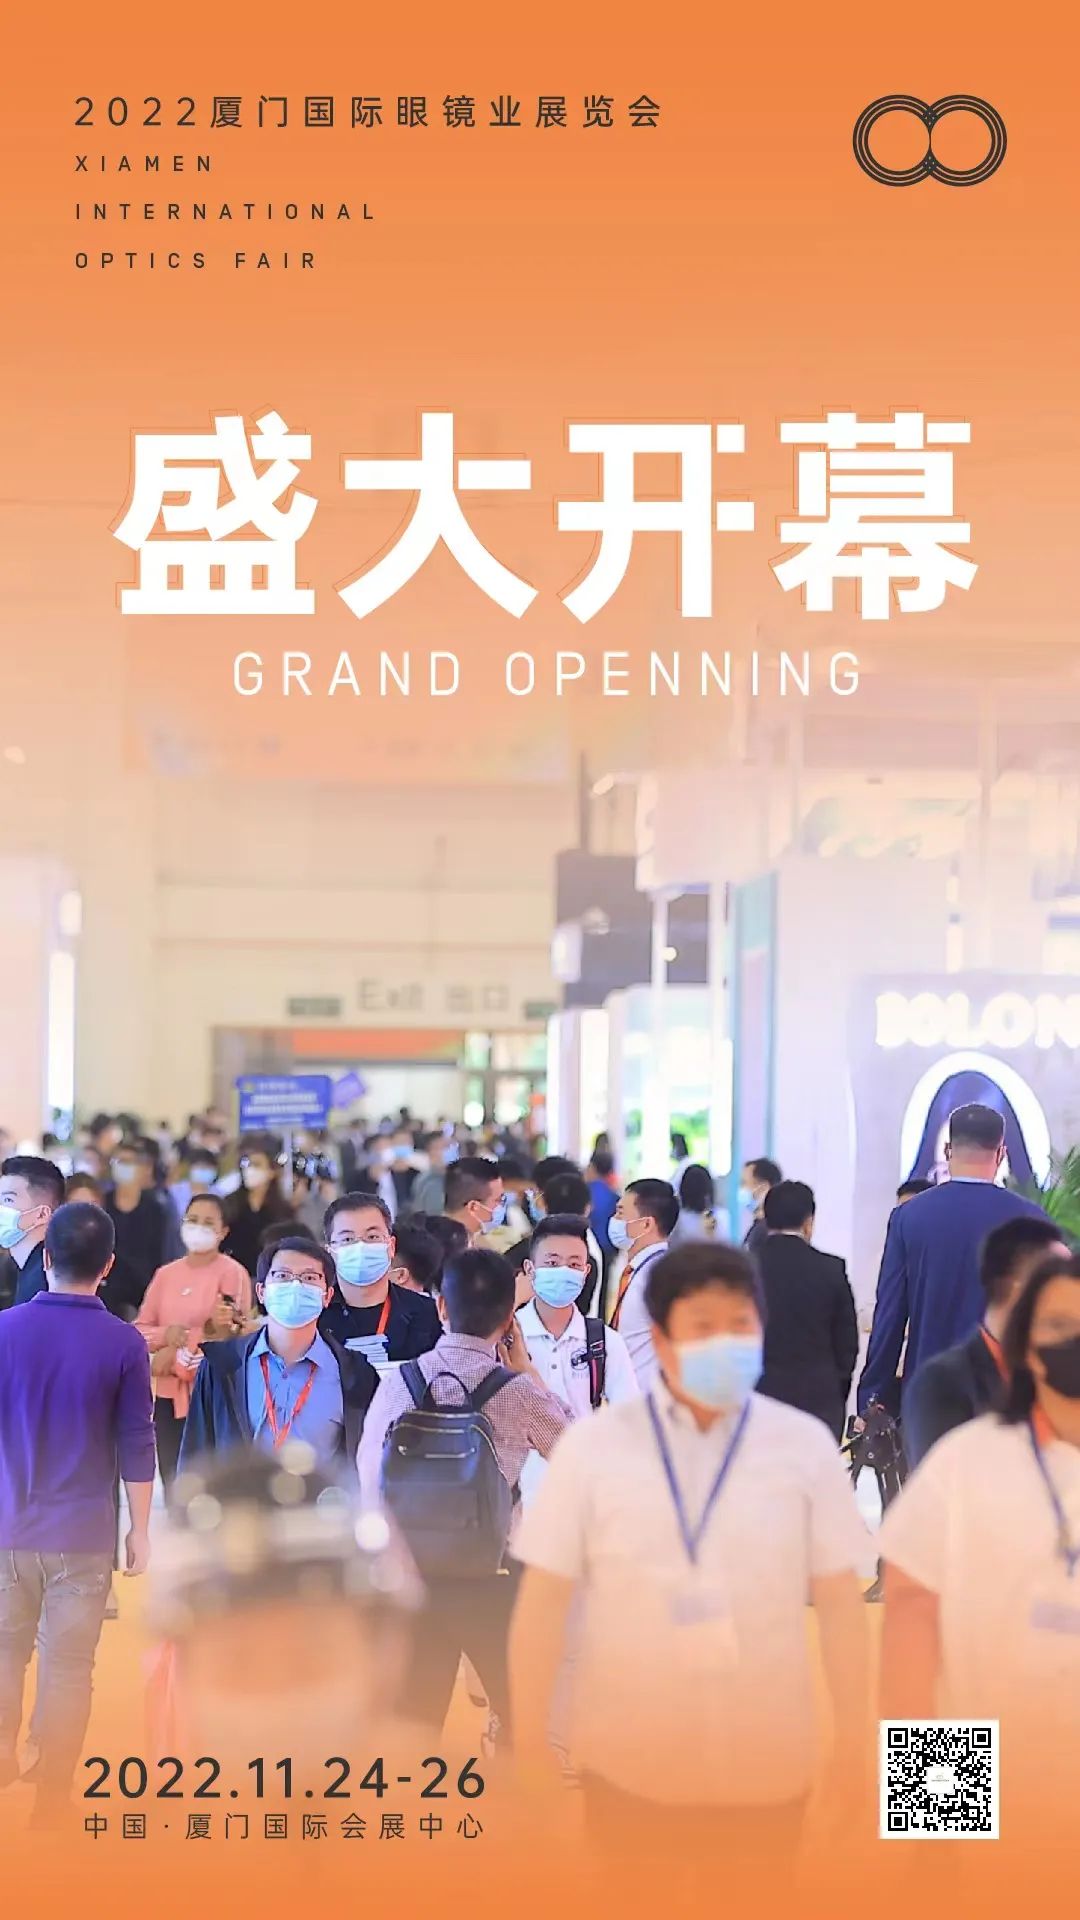 ¡Hoy comienza la Feria Internacional de Óptica de Xiamen 2022!